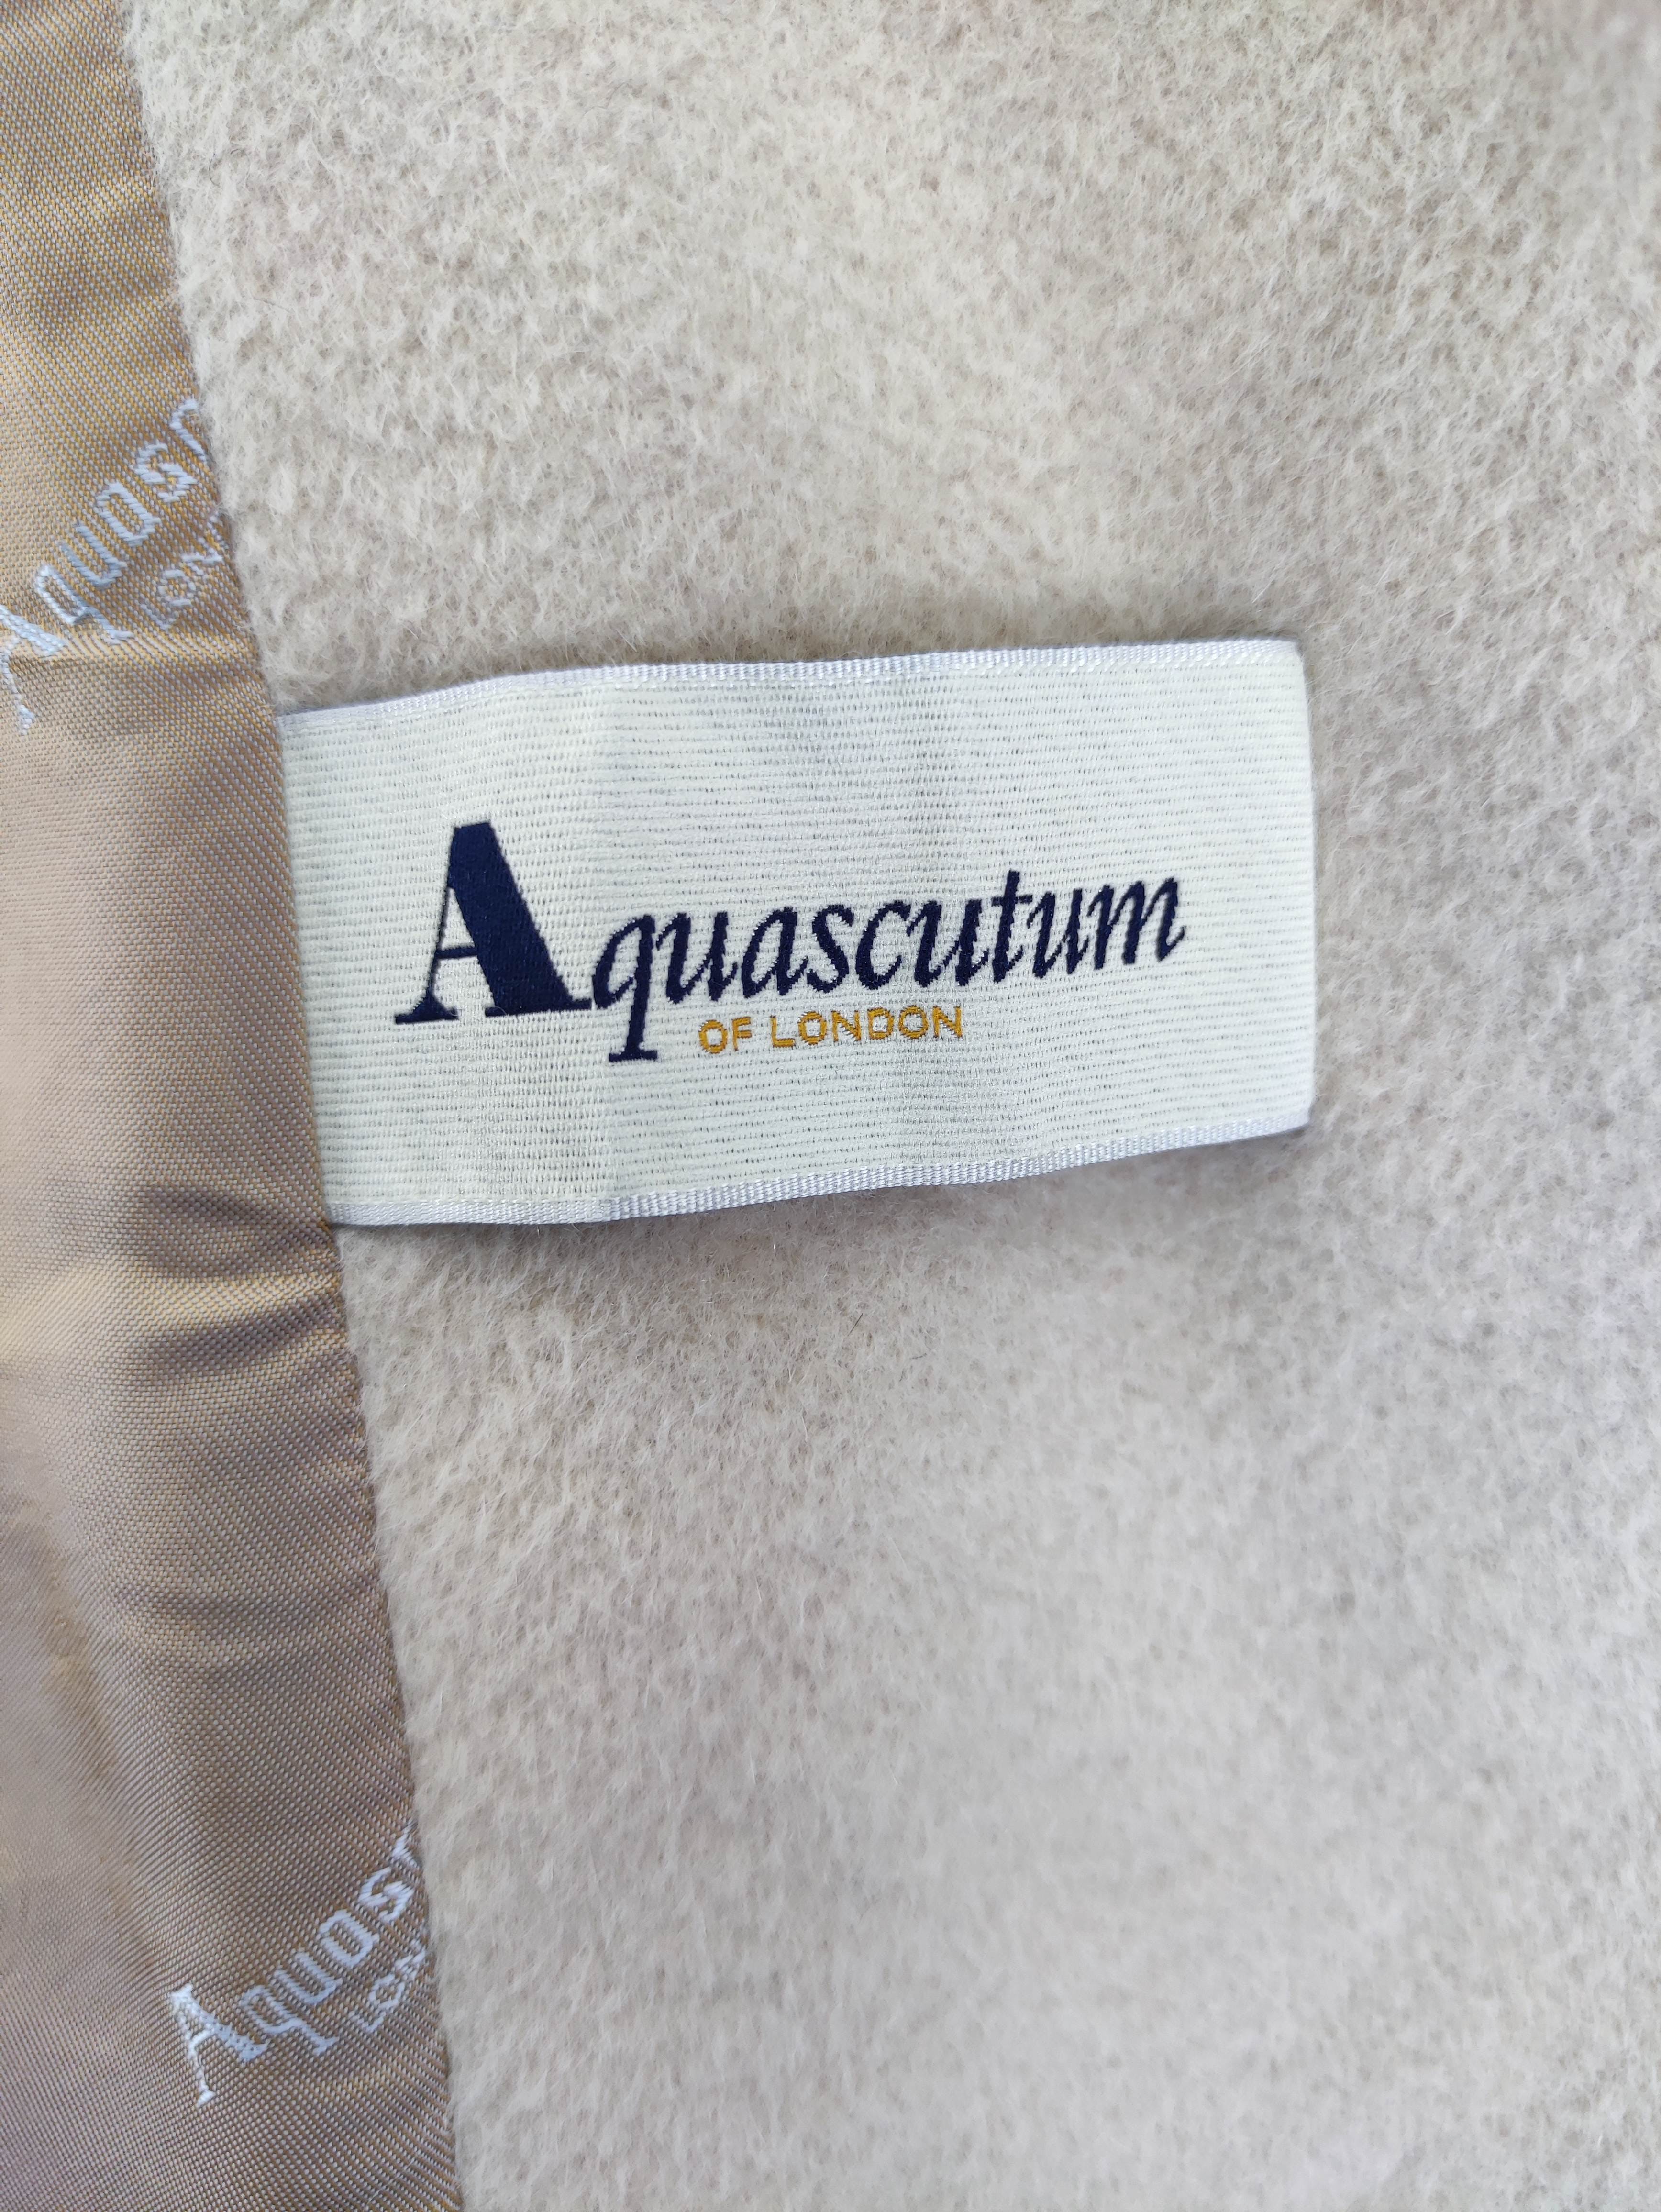 Vintage Aquascutum Wool Jacket - 4